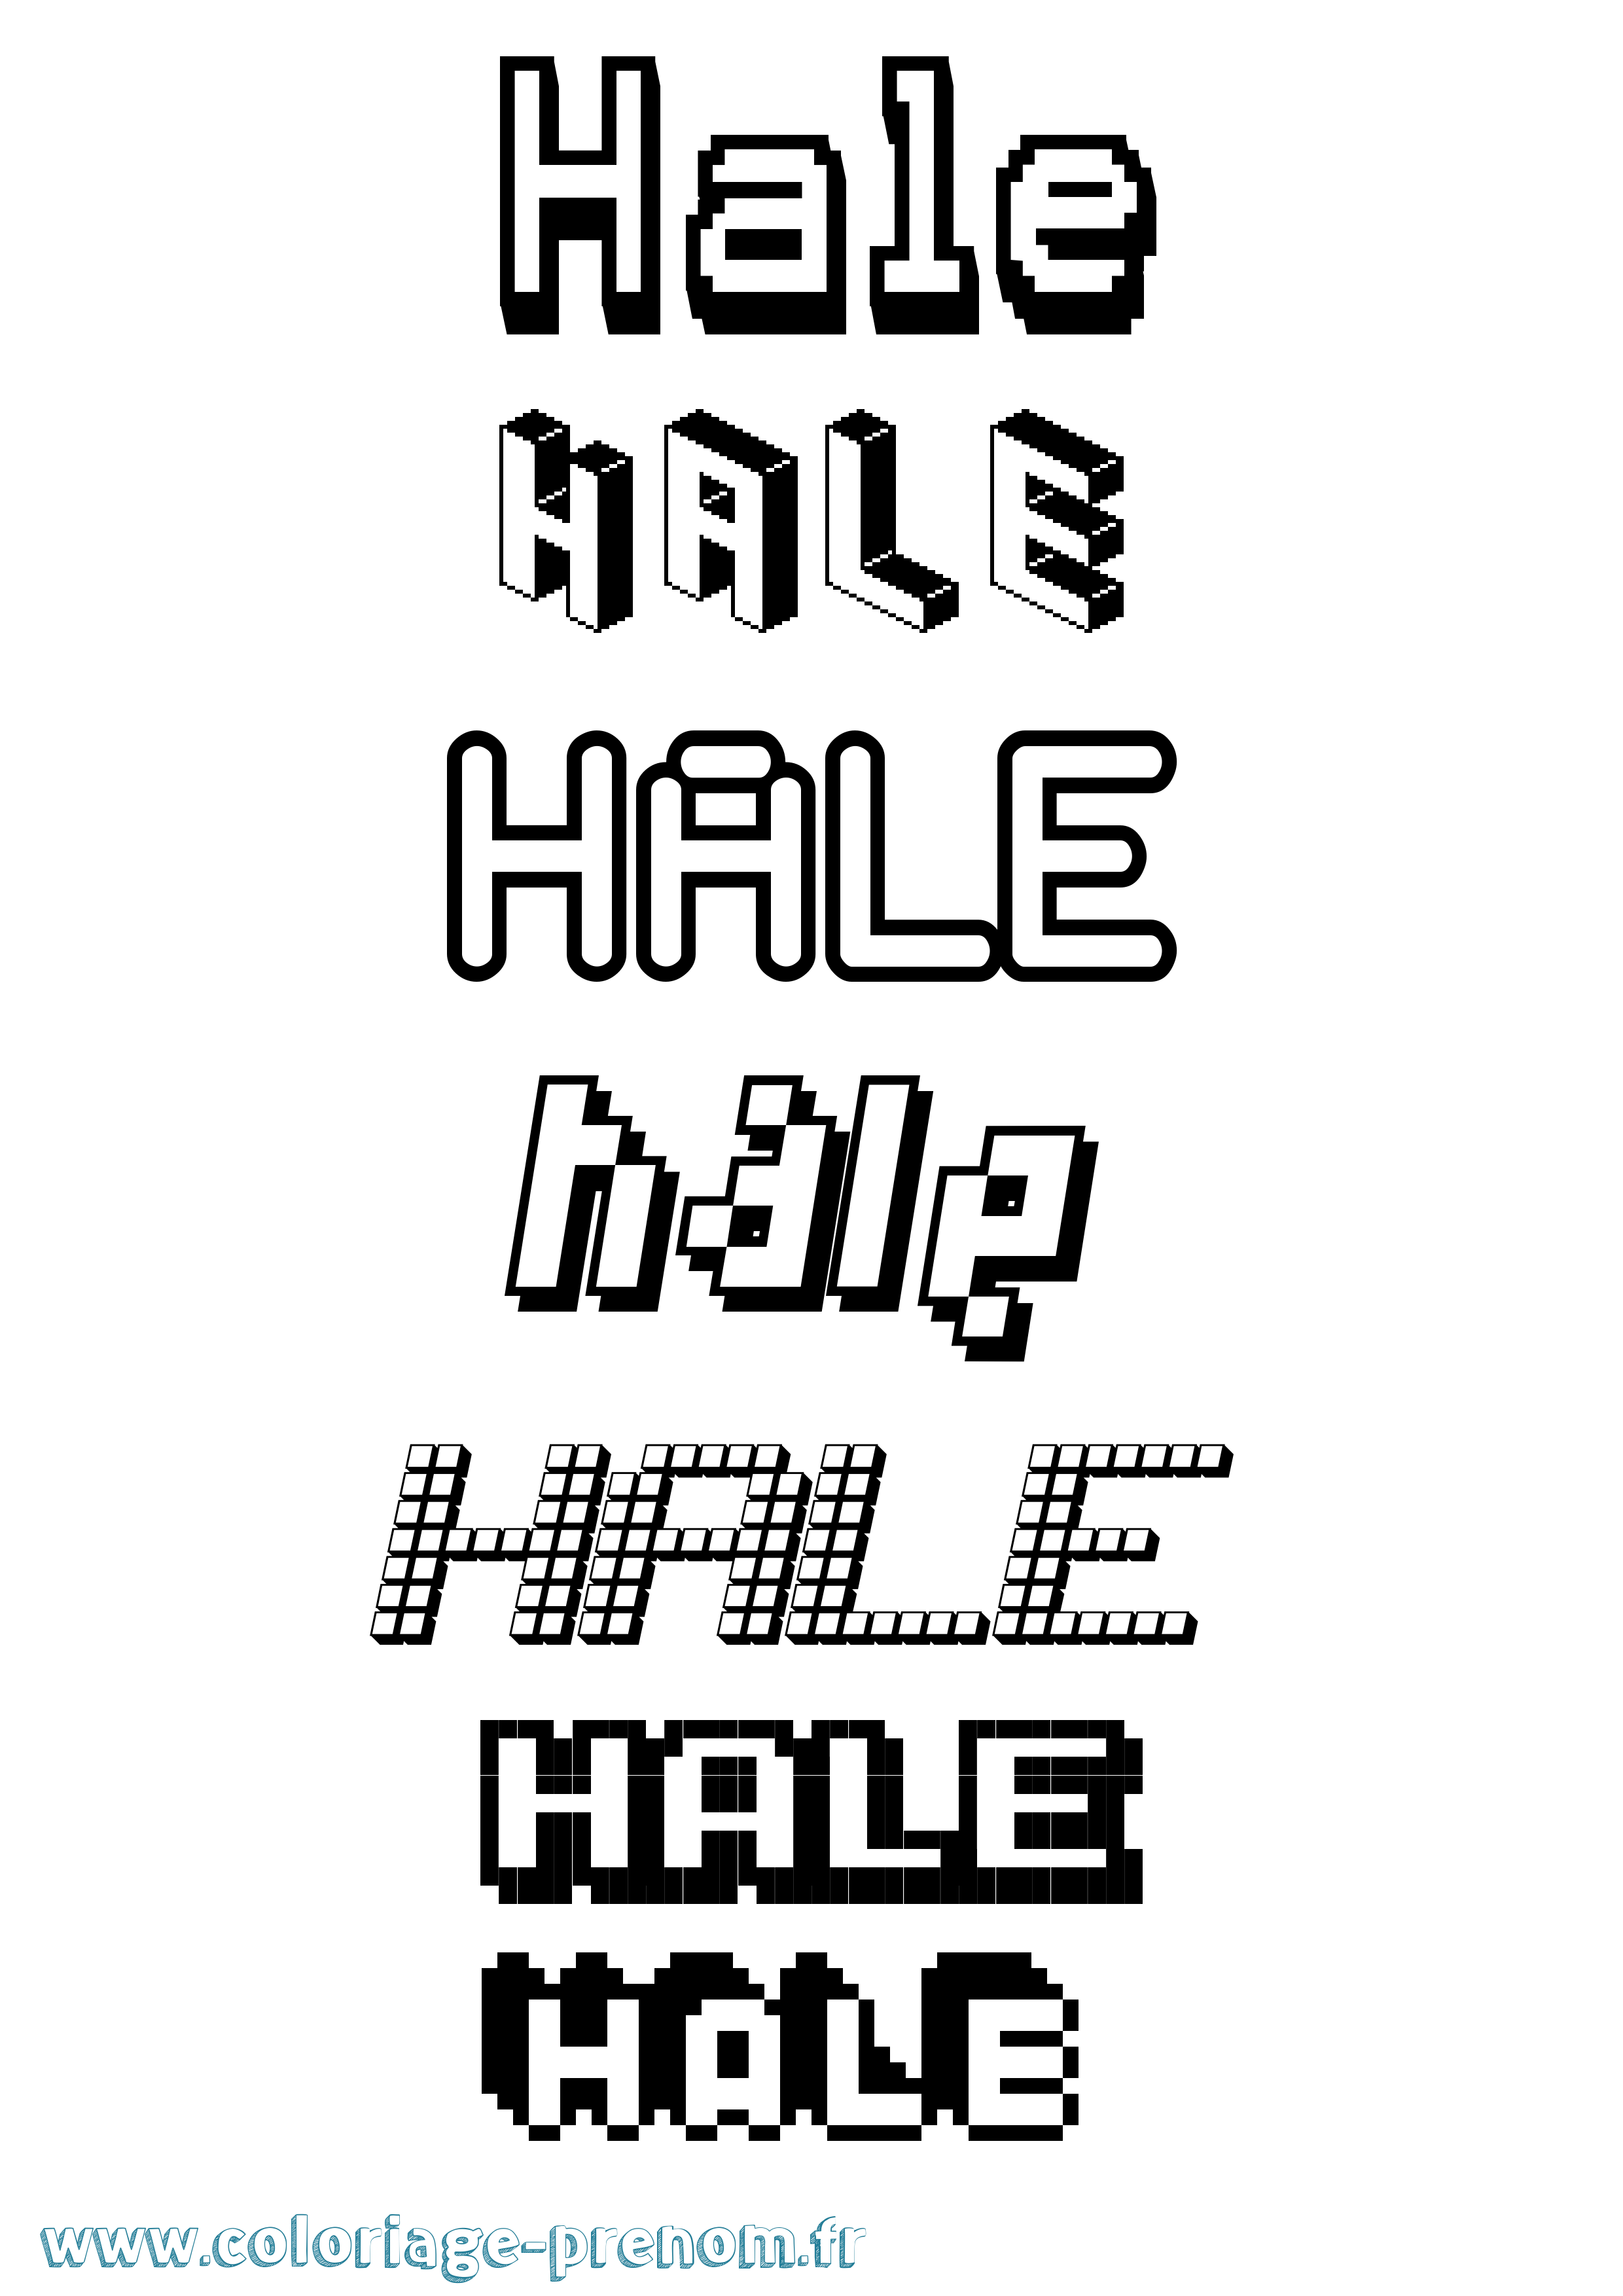 Coloriage prénom Hale Pixel